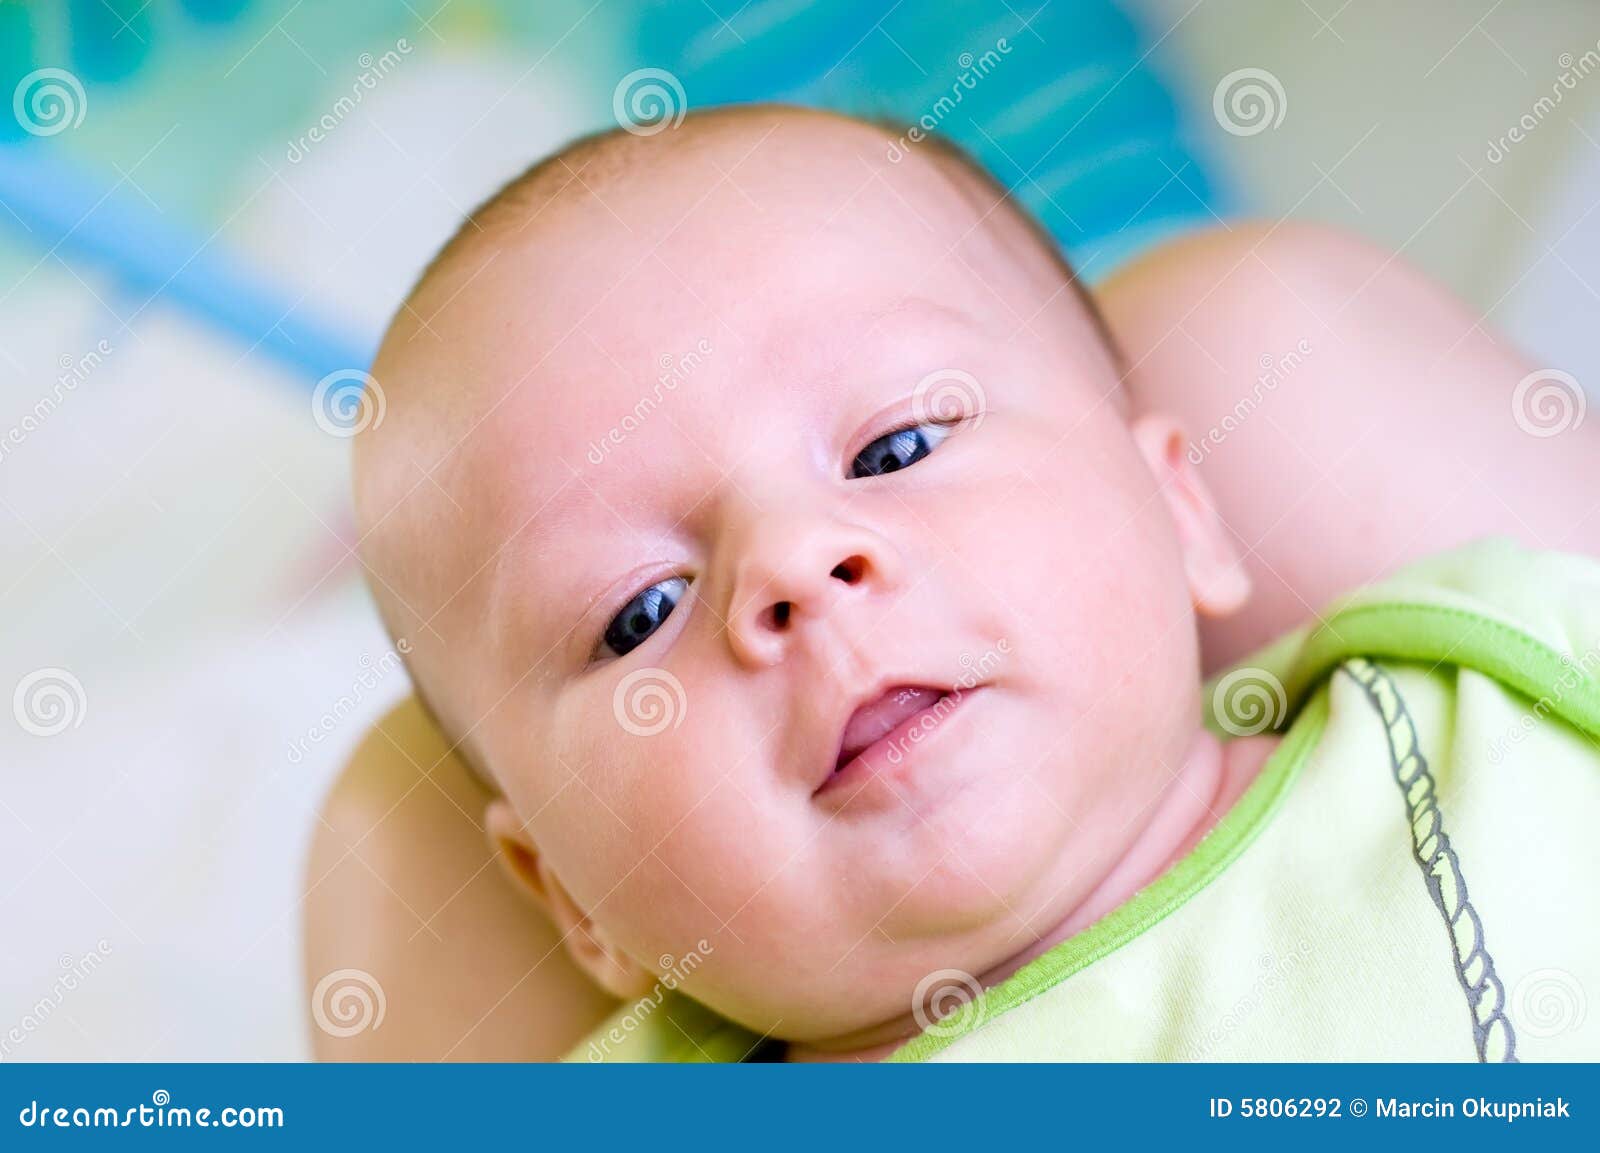 De Baby Van Zeven Weken Met Tong Stock Foto - Image of schoonheid ...